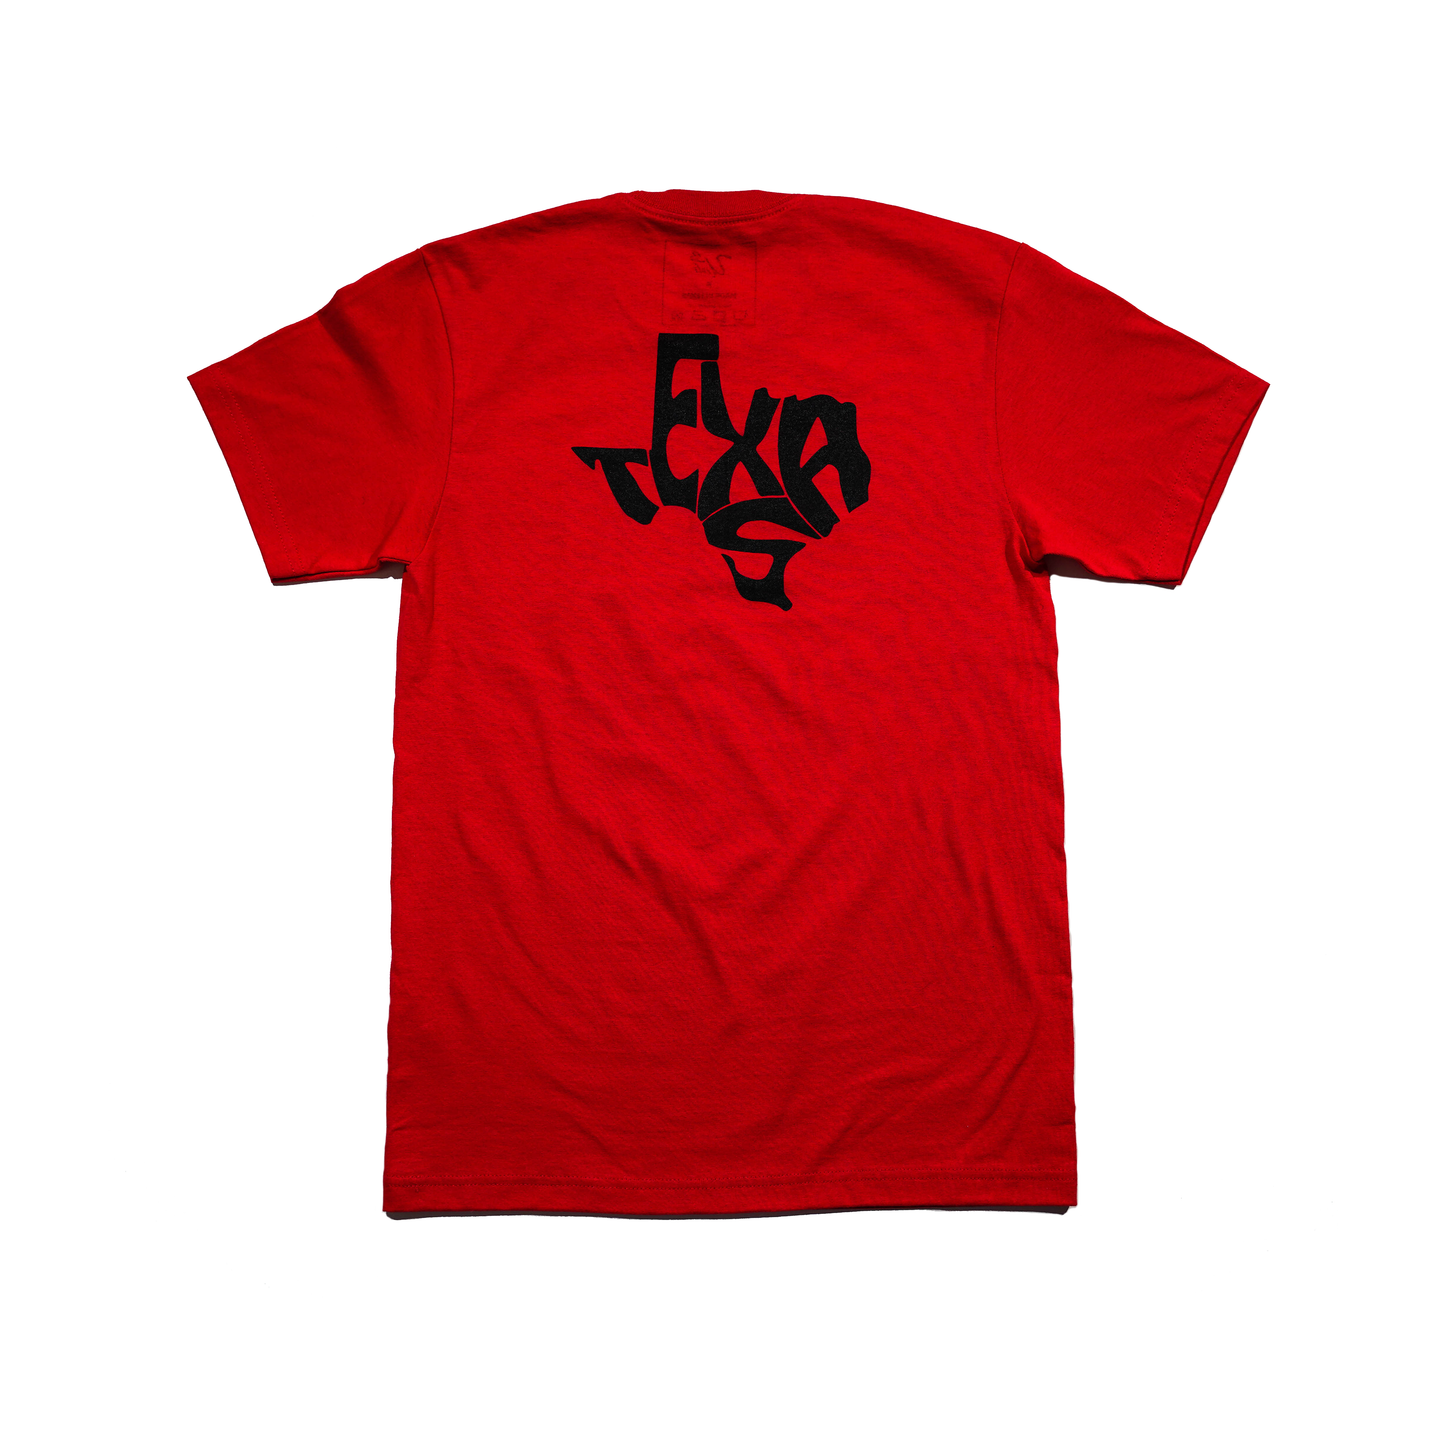 TXHSFB T-Shirt Red/White